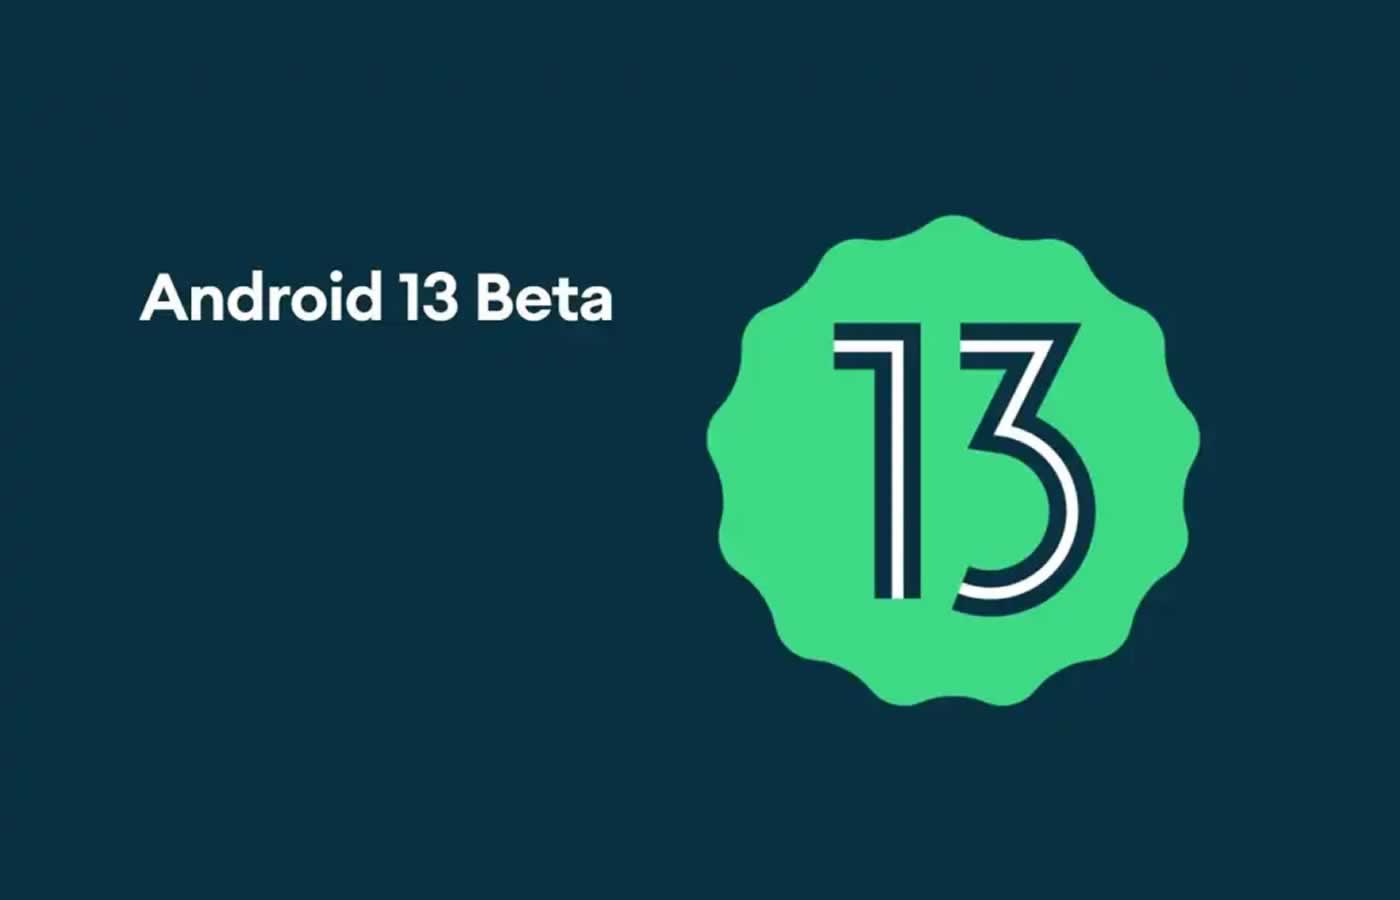 Η Google δεν έχει καν δώσει στο Android 13 επίσημη ανακοίνωση επί σκηνής ακόμη, αλλά μπορείτε ήδη να το δοκιμάσετε με την κυκλοφορία